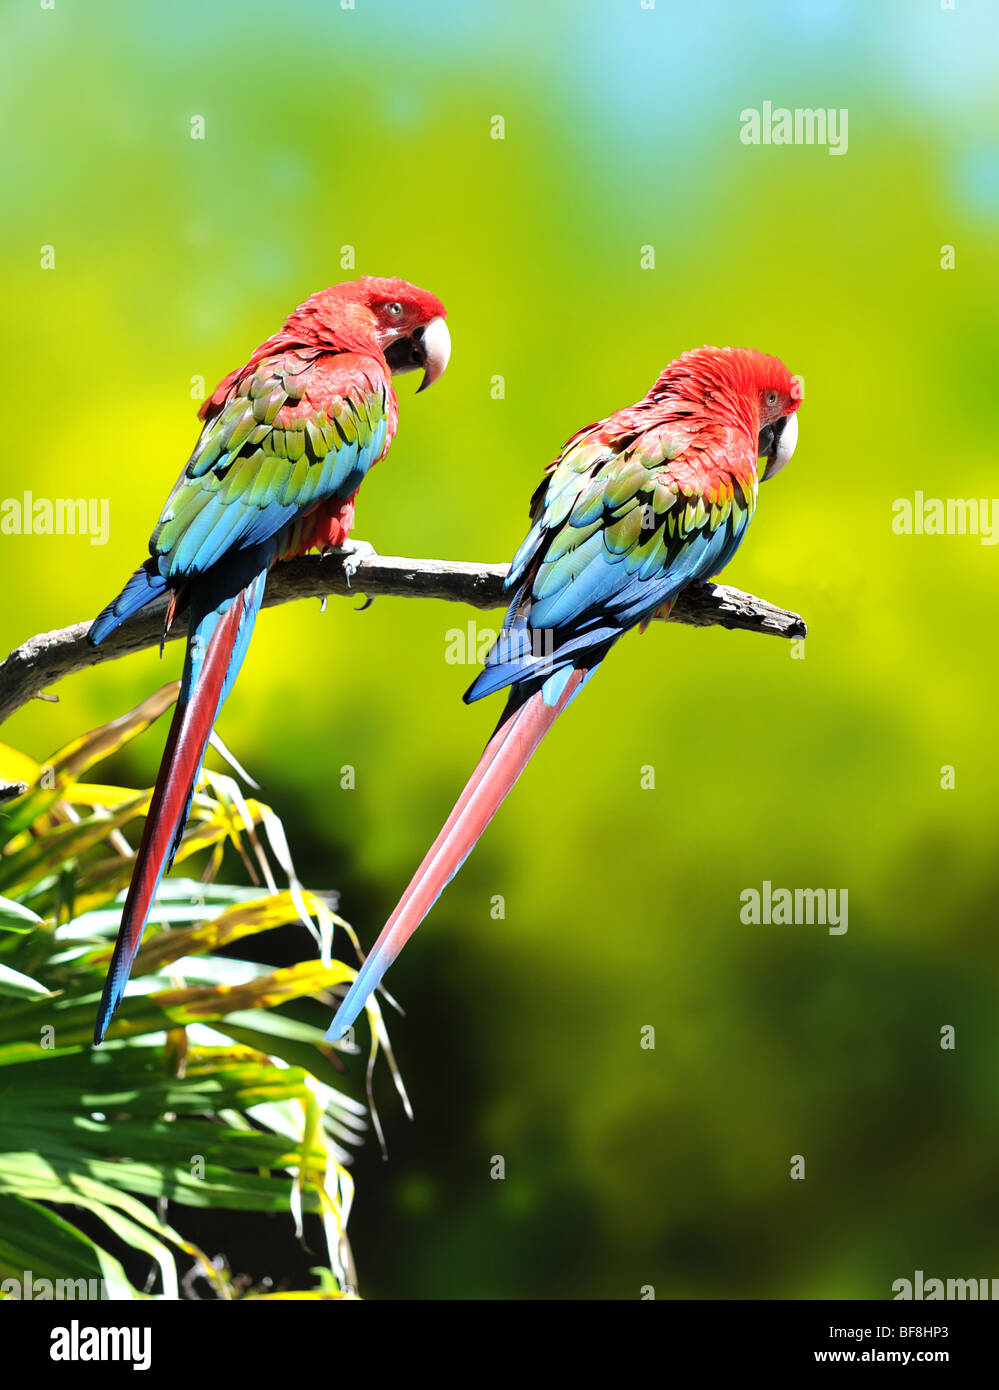 Dos loros guacamayos coloridos donde se posan en la rama de un árbol Foto de stock